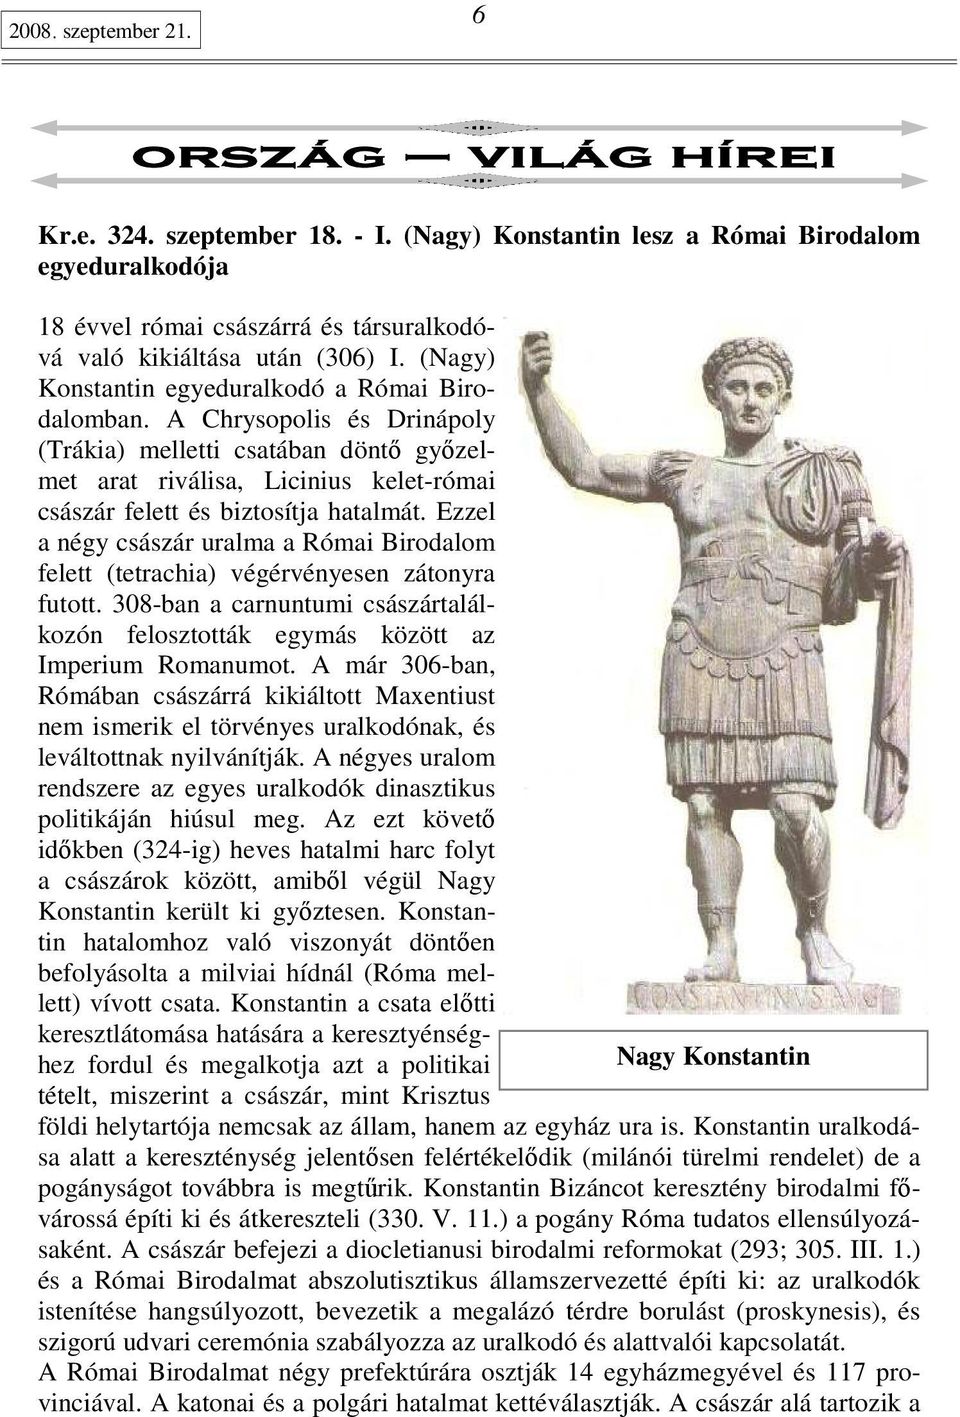 Ezzel a négy császár uralma a Római Birodalom felett (tetrachia) végérvényesen zátonyra futott. 308-ban a carnuntumi császártalálkozón felosztották egymás között az Imperium Romanumot.